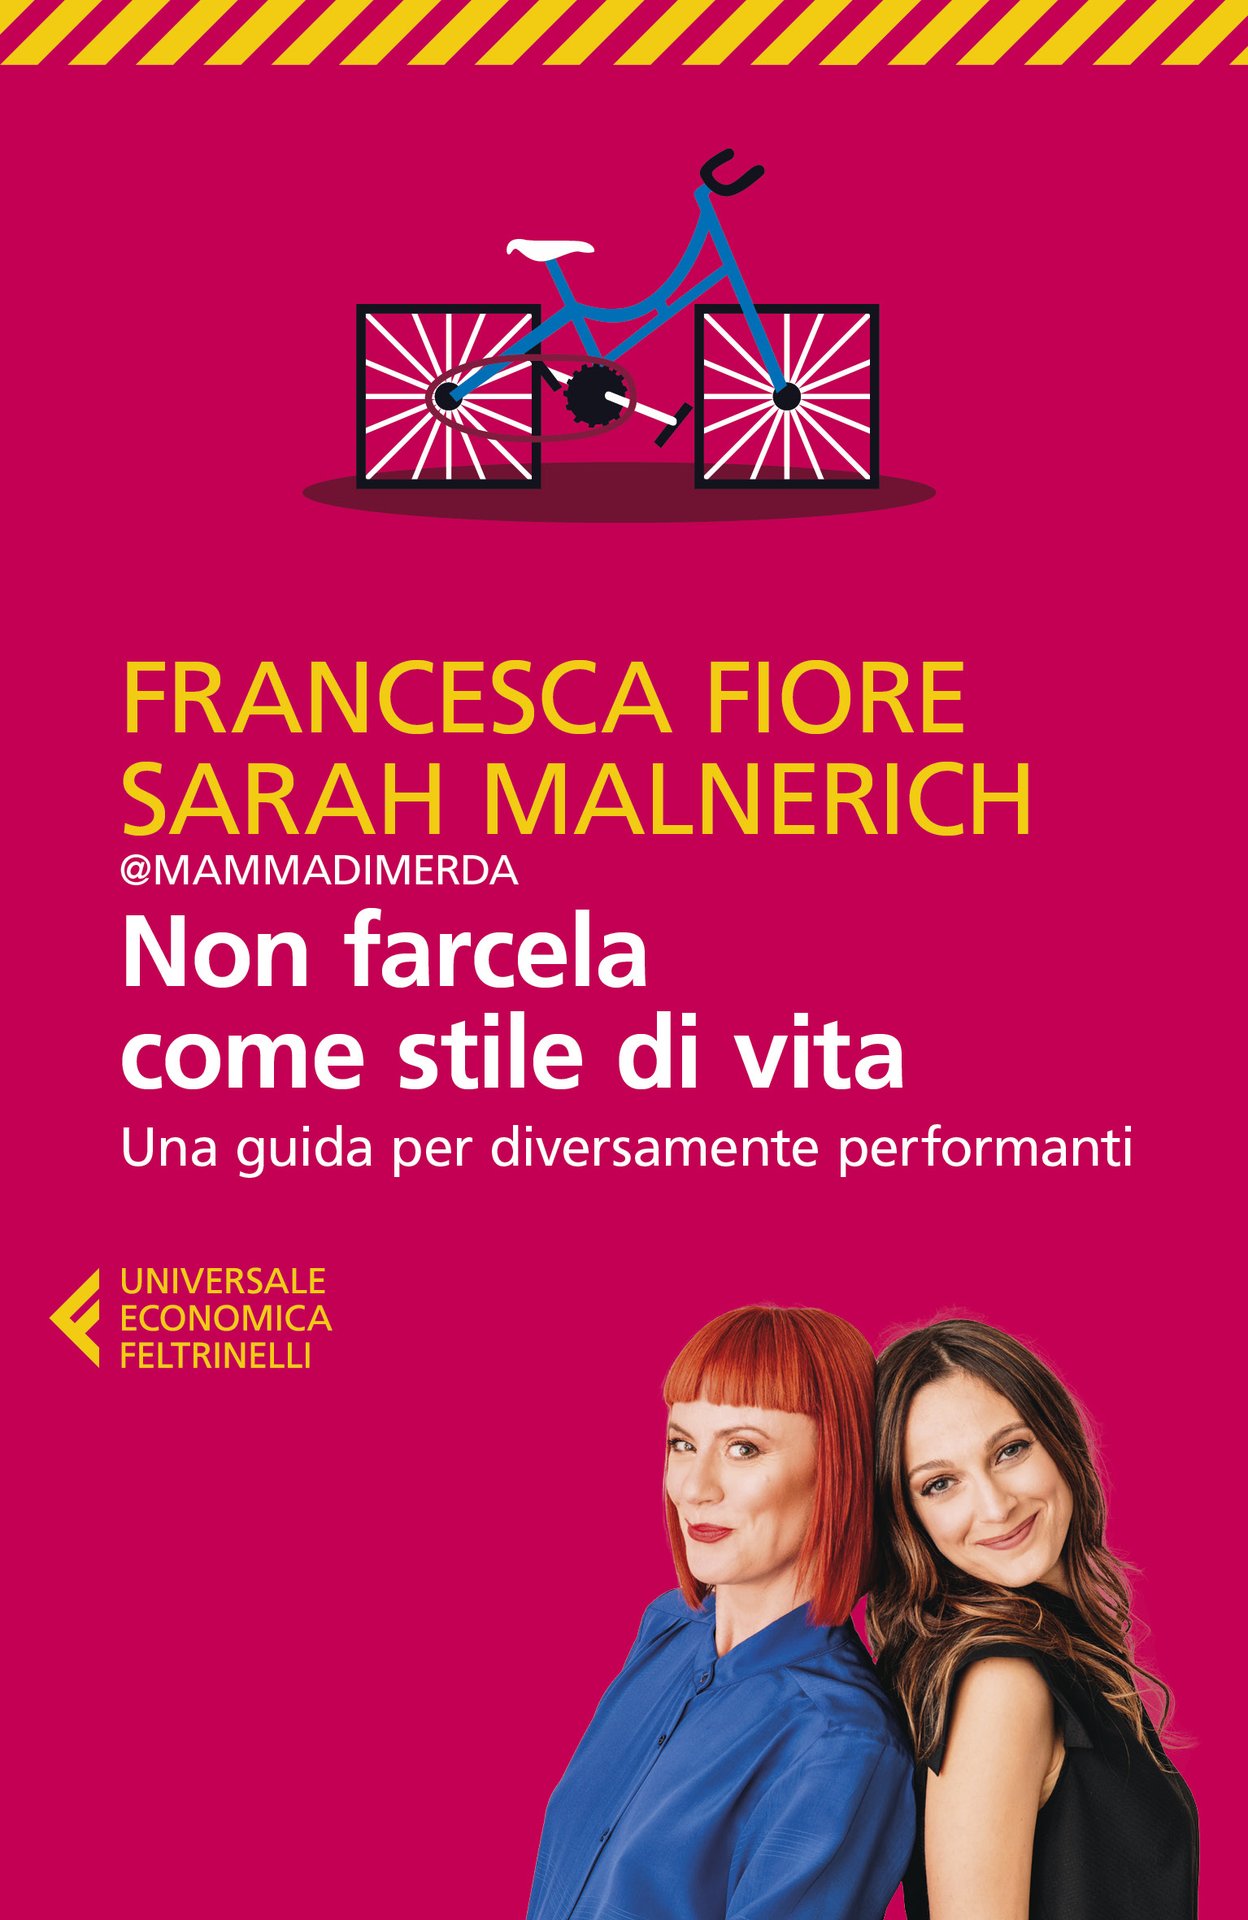 Al cinema con Francesca Fiore e Sarah Malnierich (@Mammadimerda)